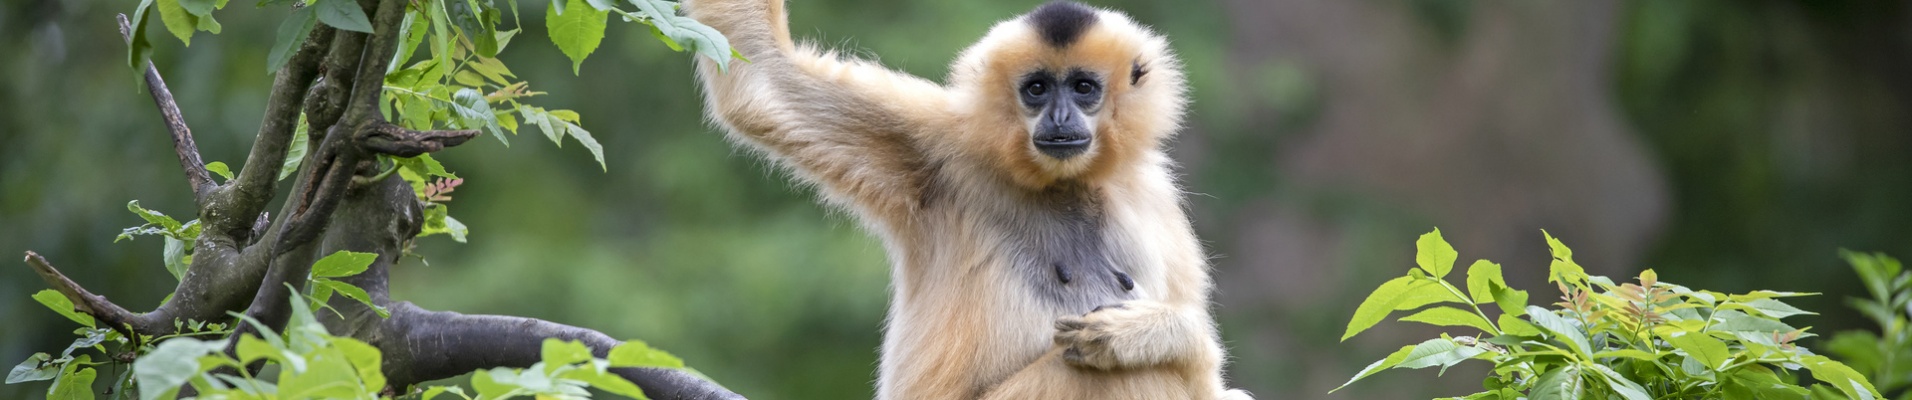 Gibbon dans une forêt en Thaïlande